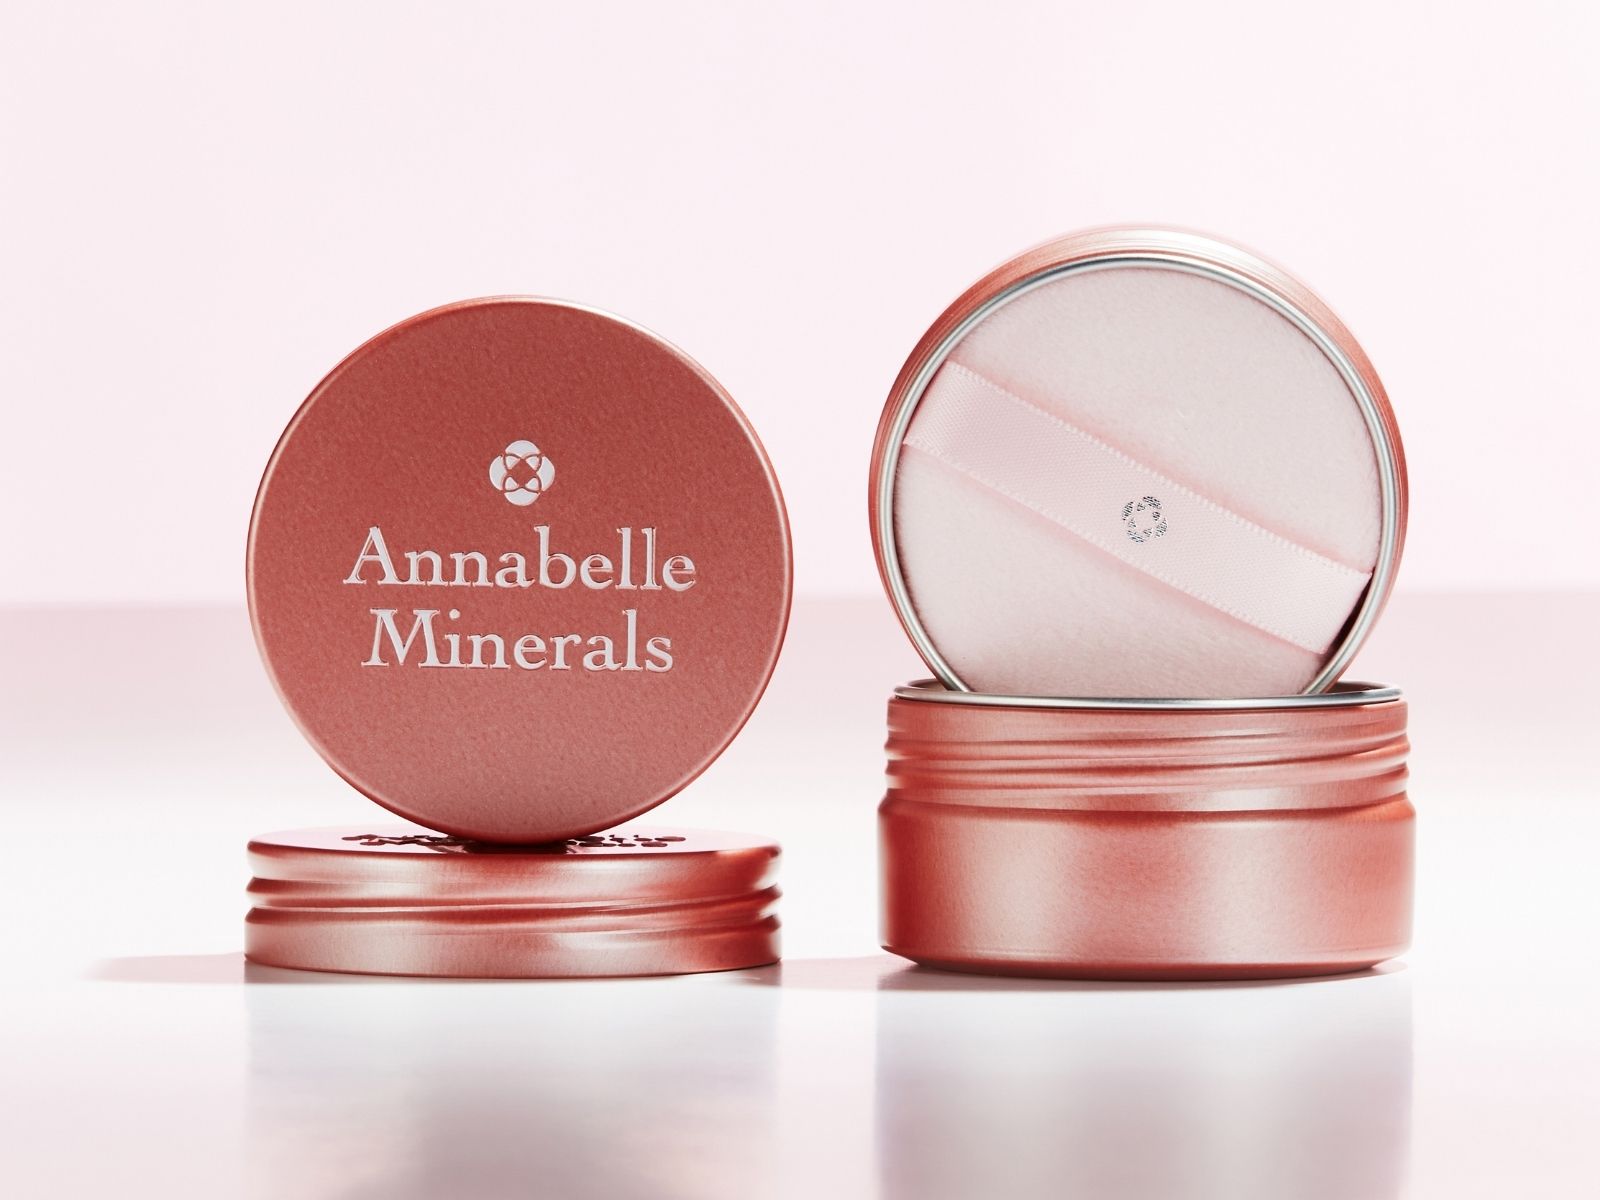 Aluminiowy słoiczek wielokrotnego użytku Annabelle Minerals do przechowywania kosmetyków mineralnych